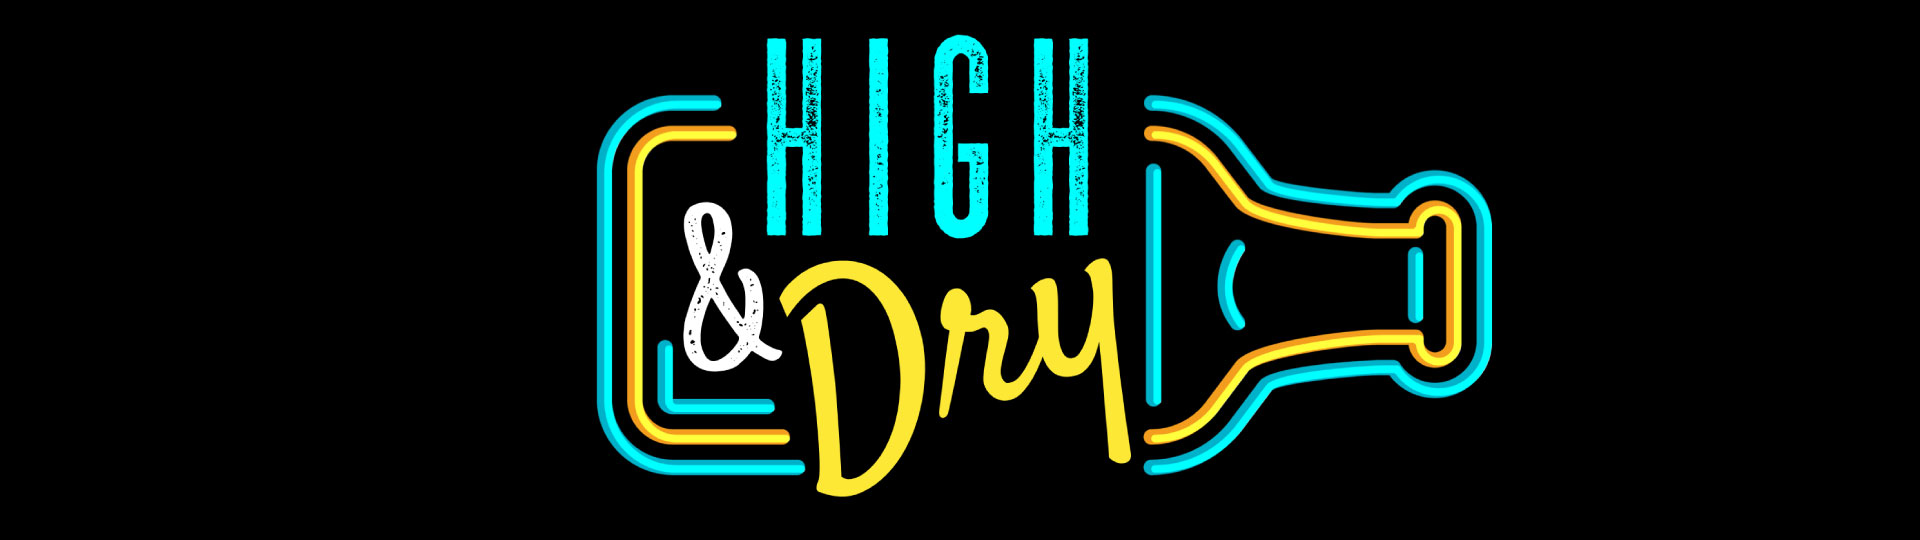 High & Dry Liquor